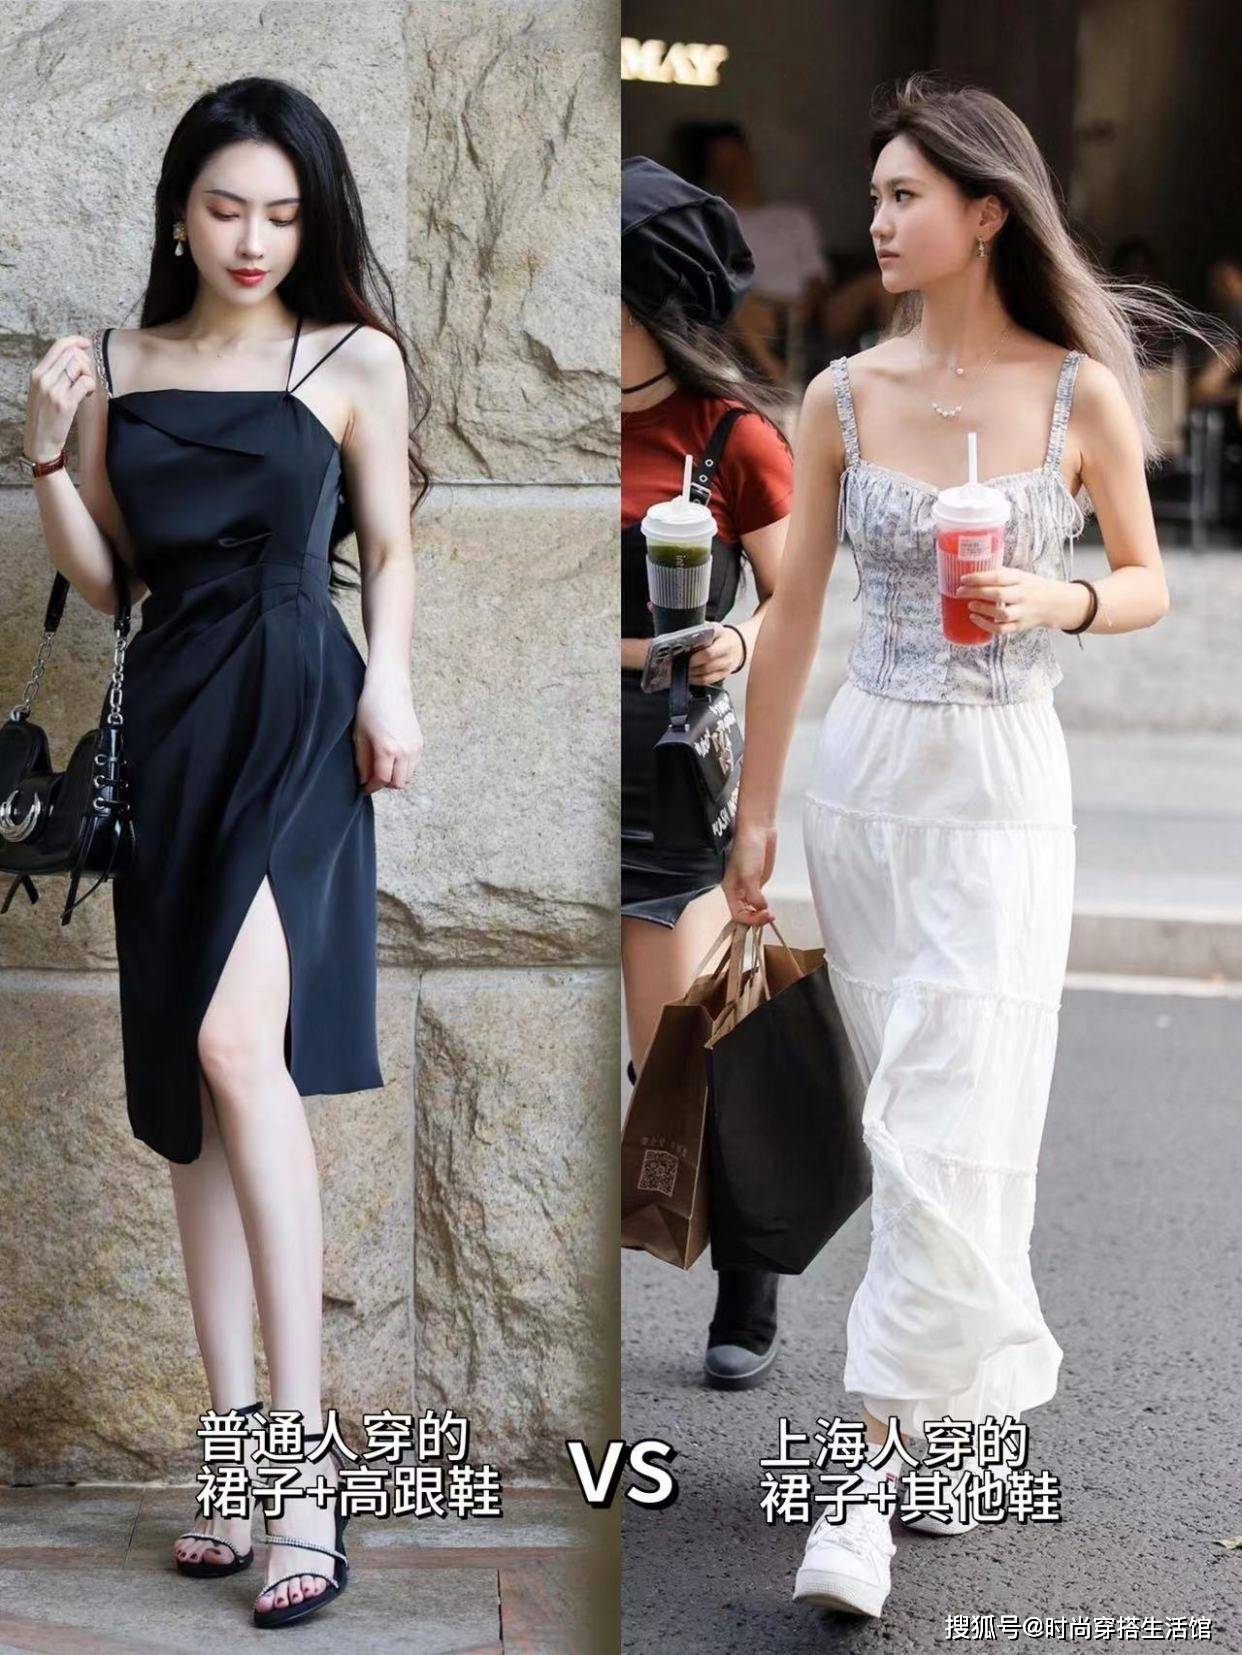 再强调一次：裙子下面一定不要搭高跟鞋，学上海女人这样穿更高级